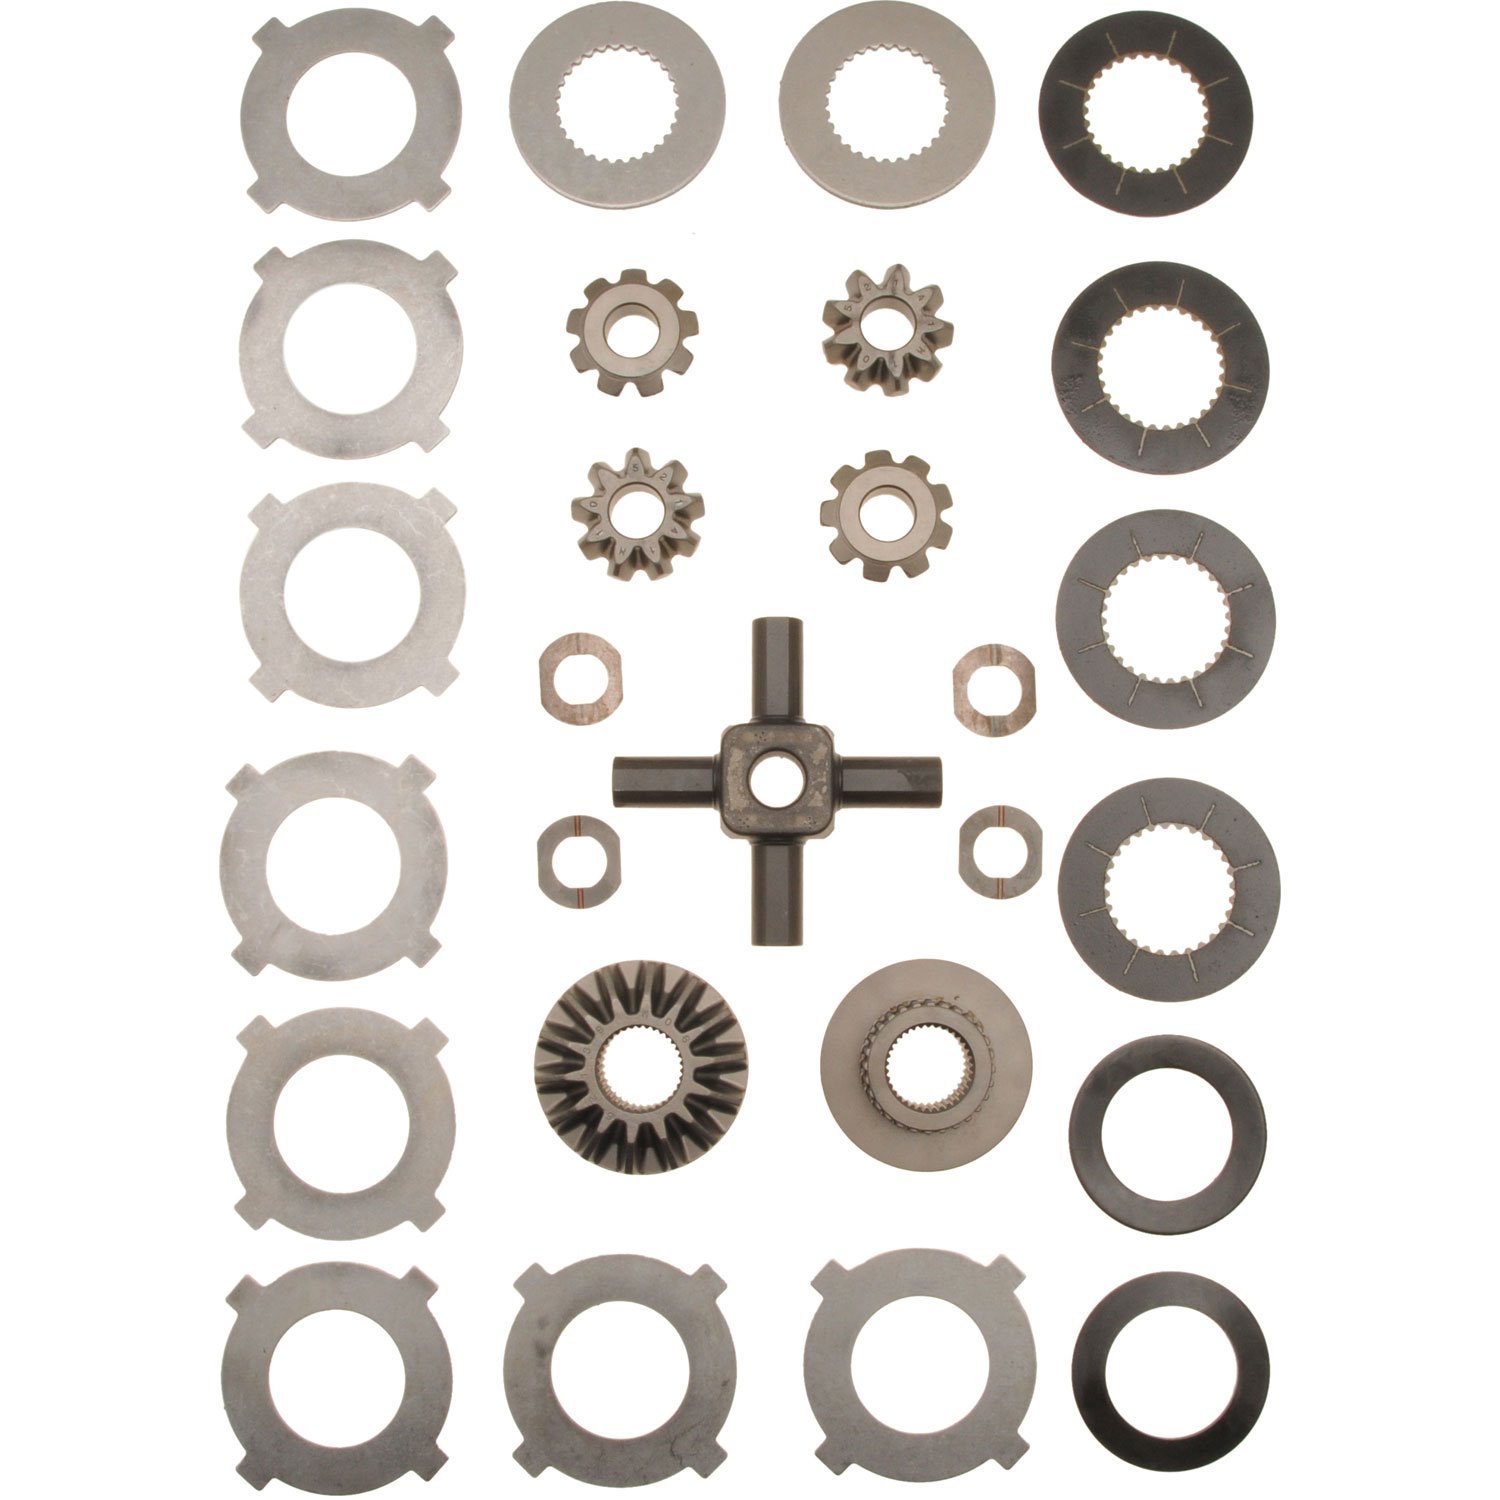 Inner Gear Kit - Trac-Loc Fits: Dana 80 w/ Trac Lok Differential